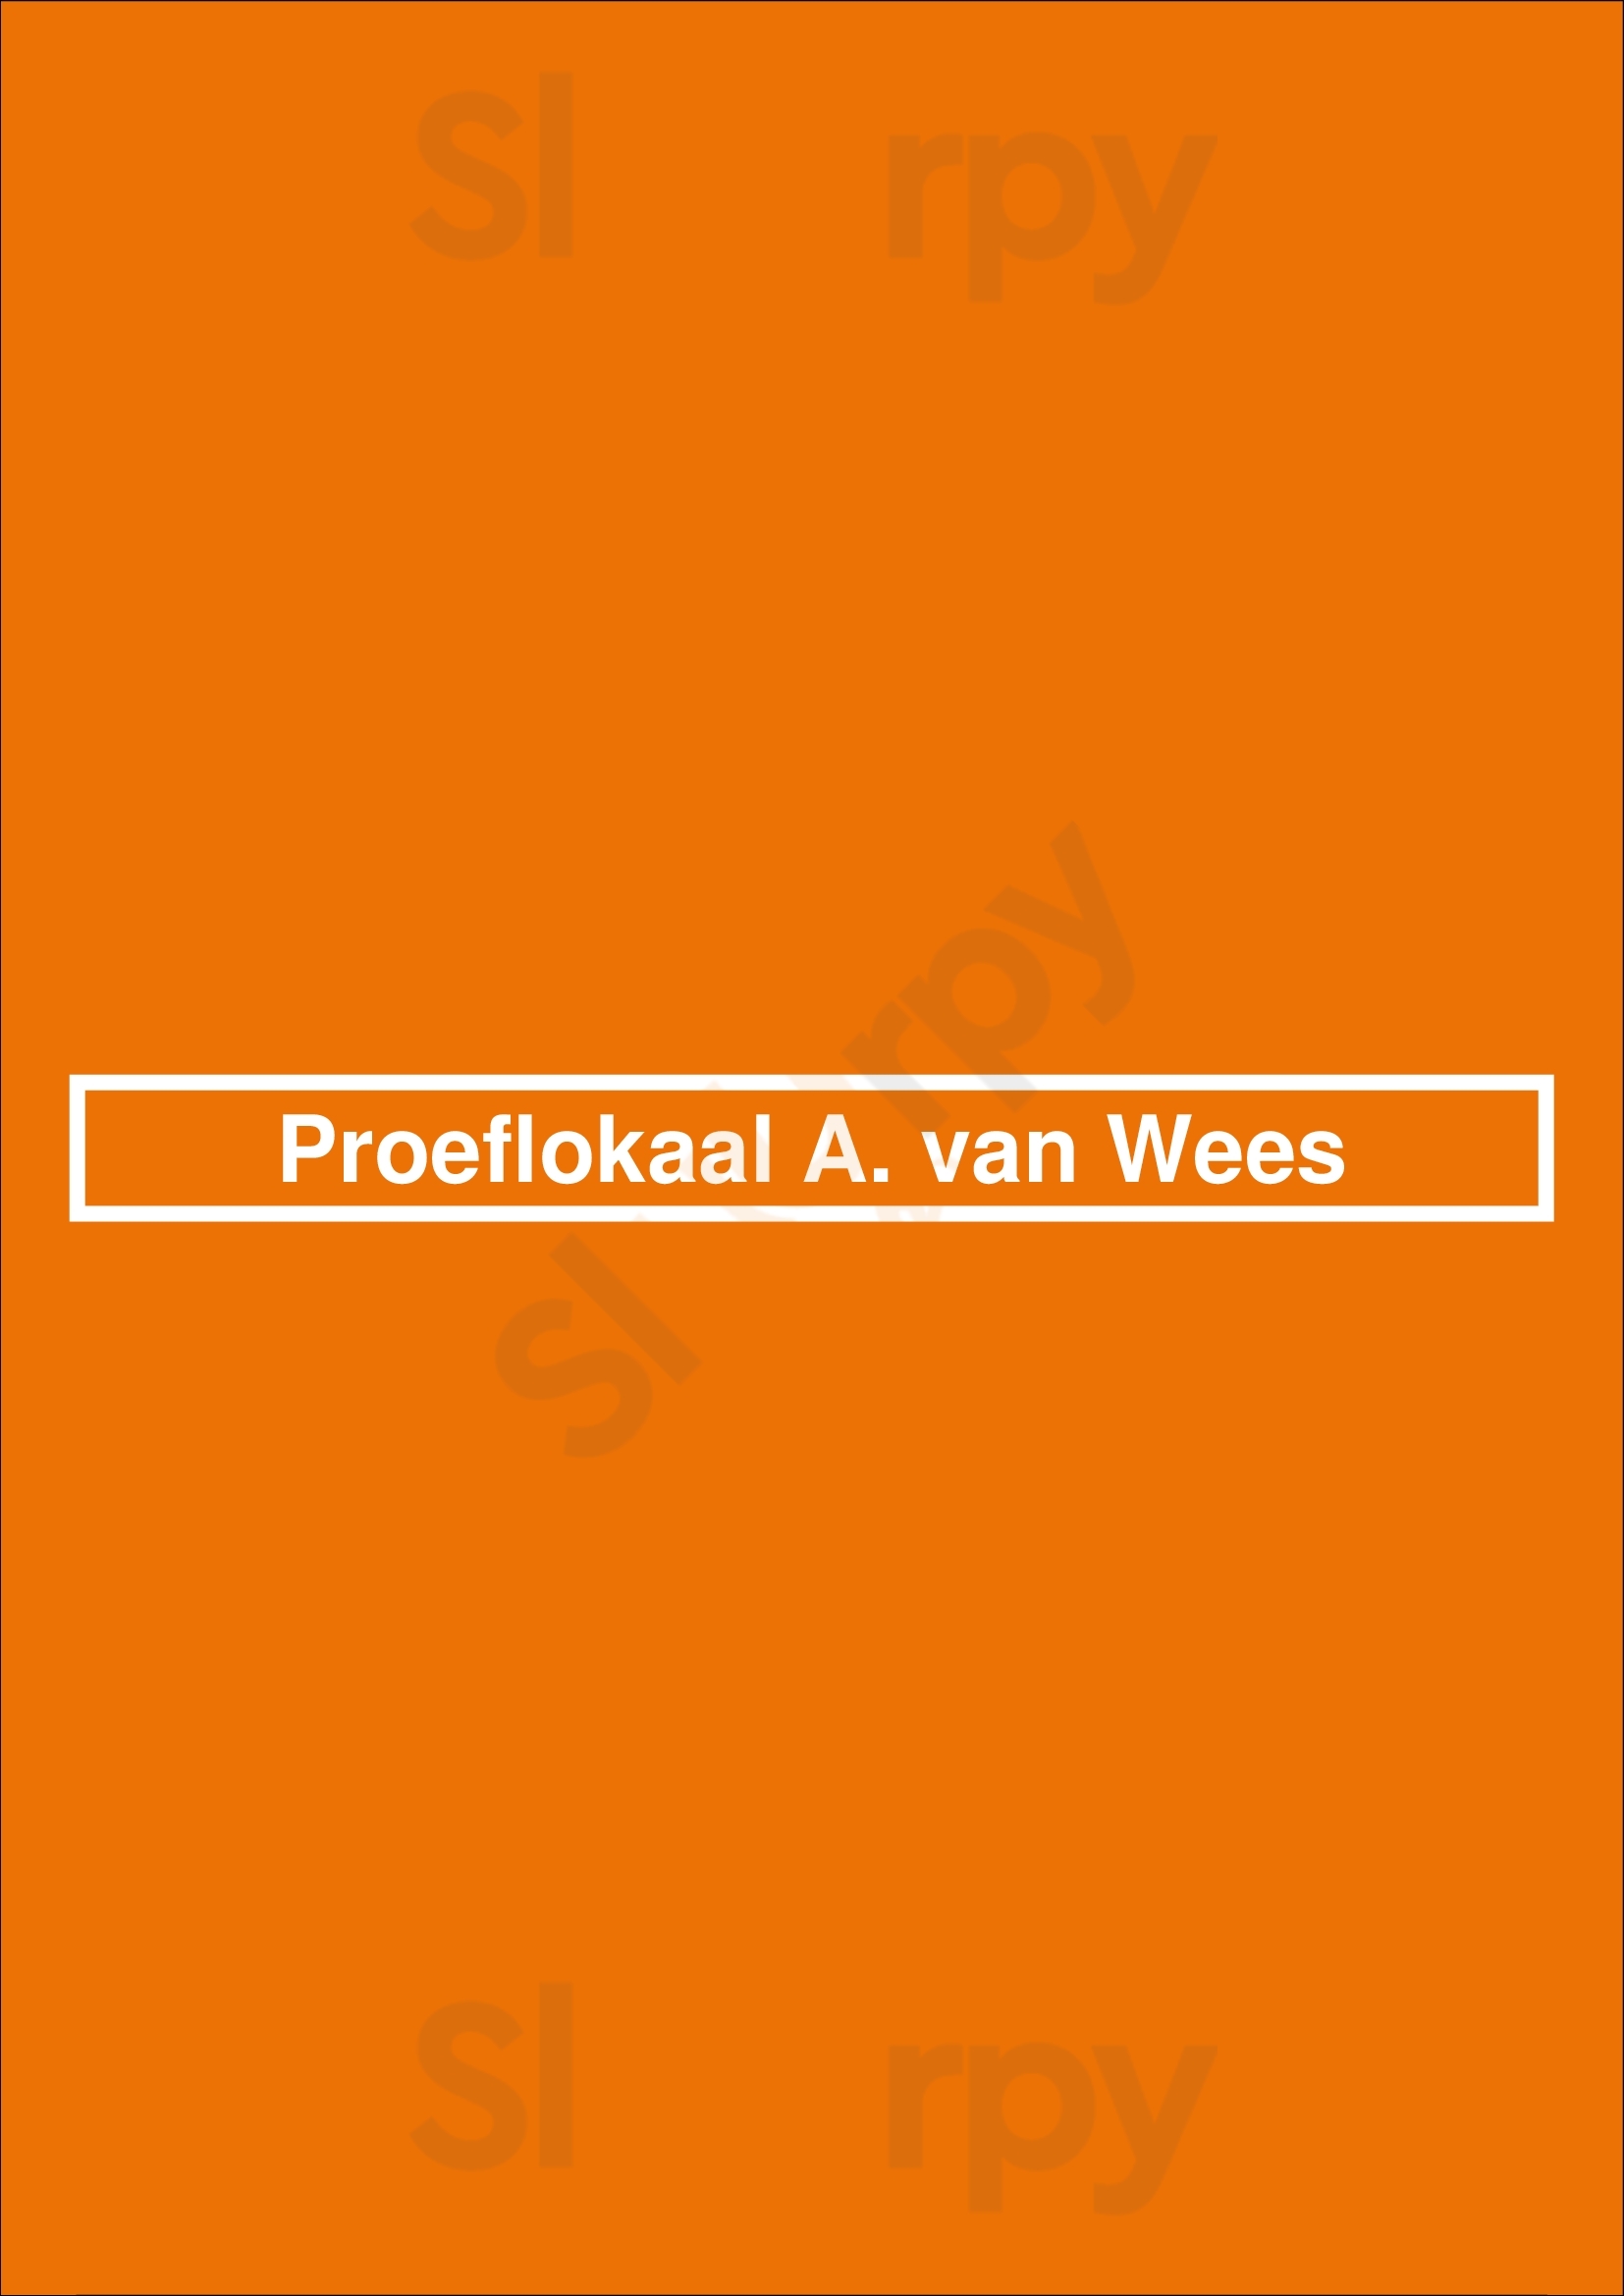 Proeflokaal A. Van Wees Amsterdam Menu - 1